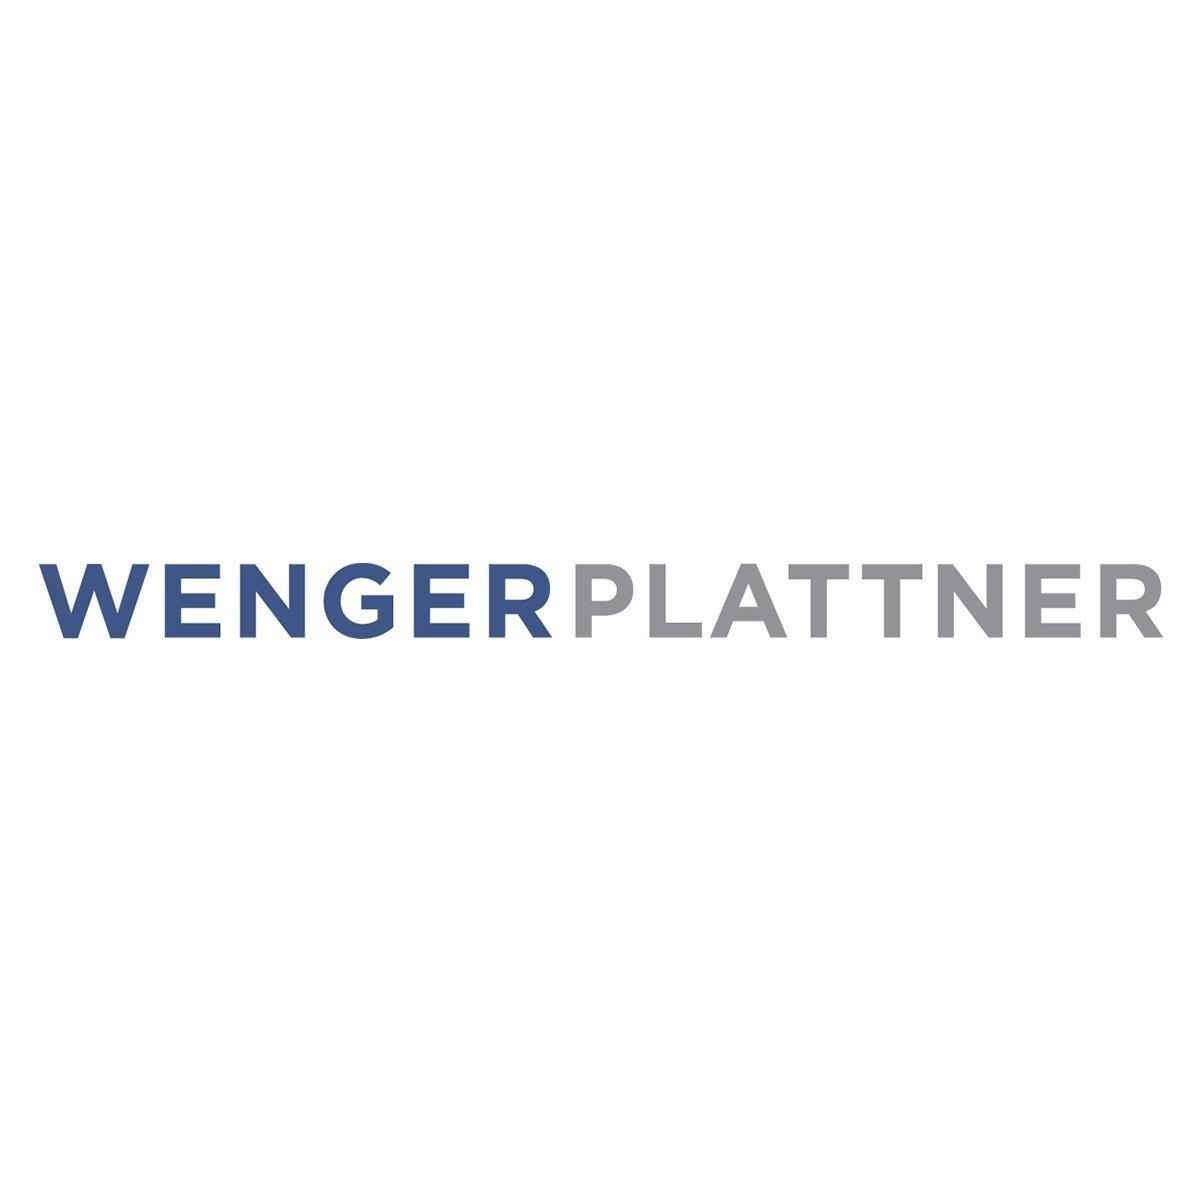 Wenger Plattner logo